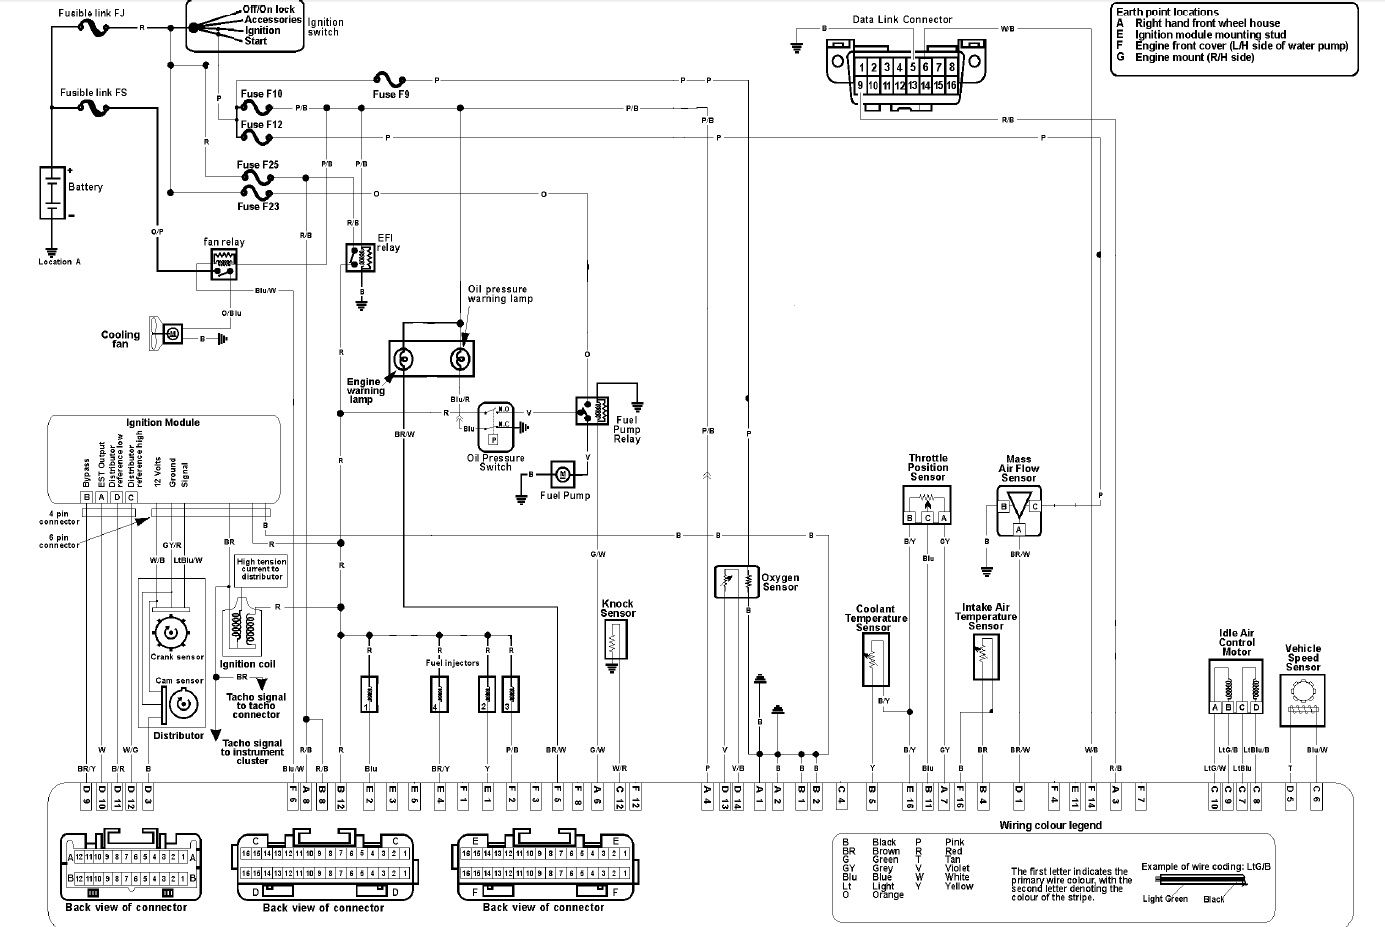 4cyl maf based wiring diagram.jpg